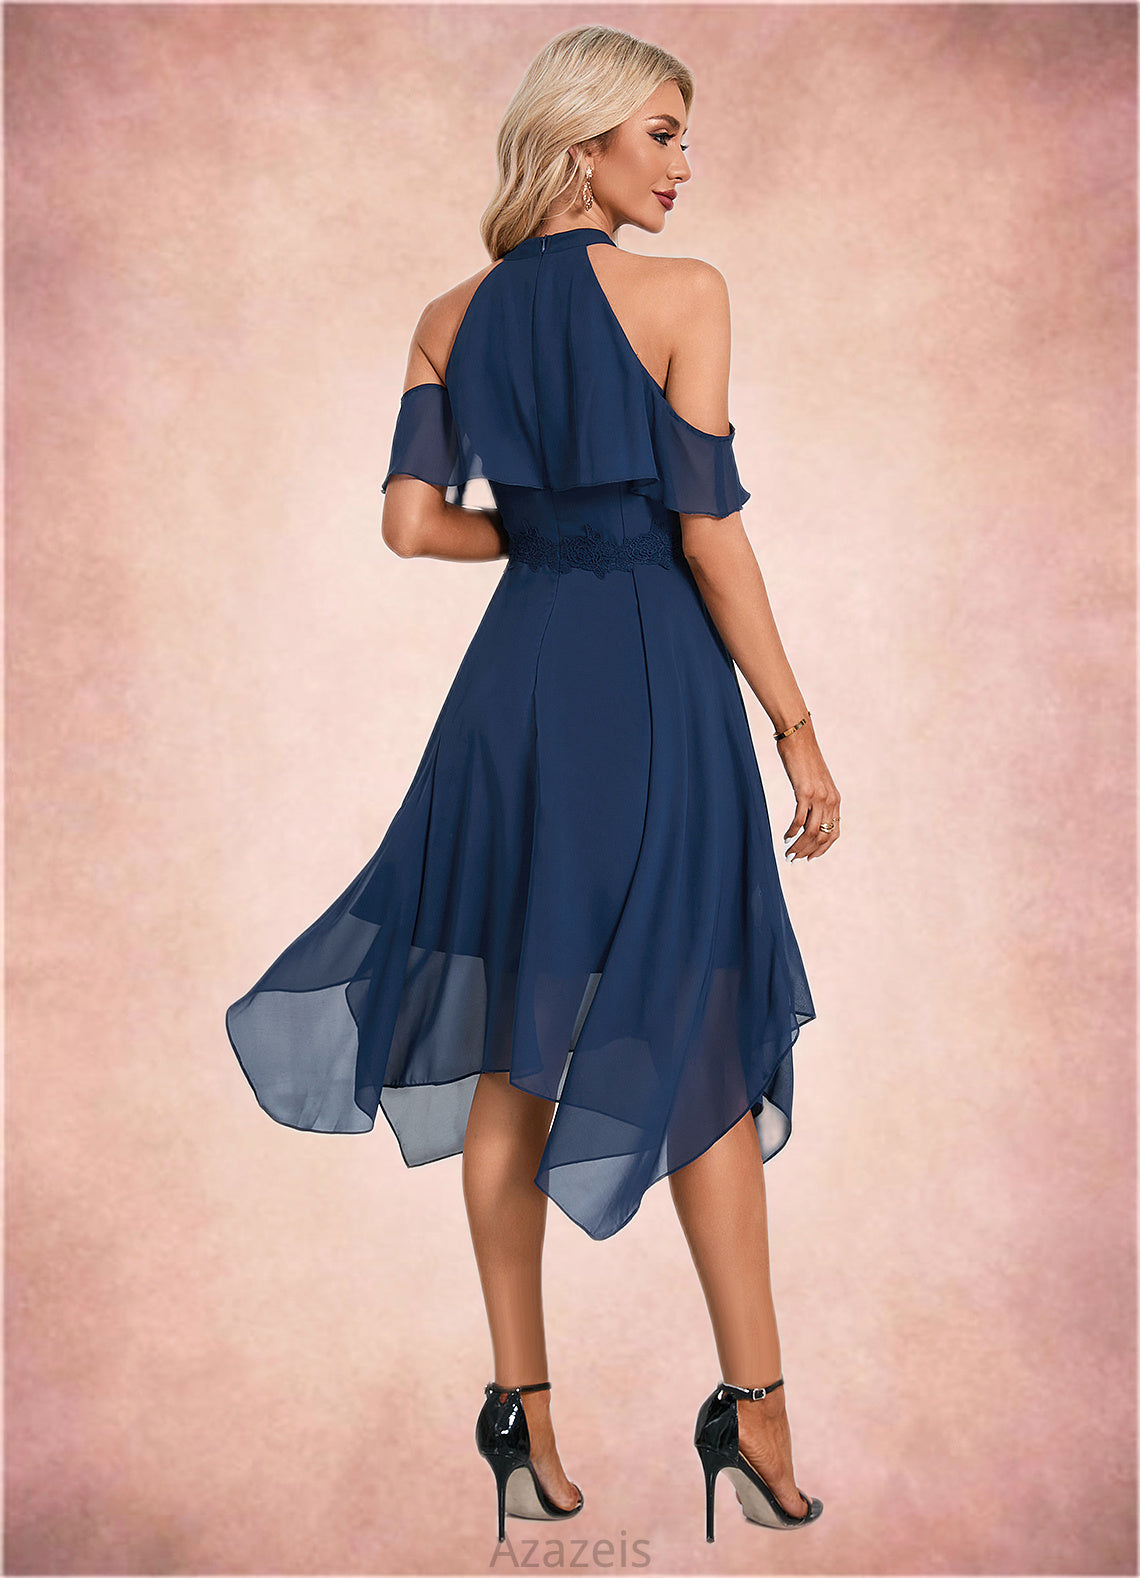 Lauretta Appliques Lace Off the Shoulder Elegant A-line Chiffon Asymmetrical Dresses DFP0022489